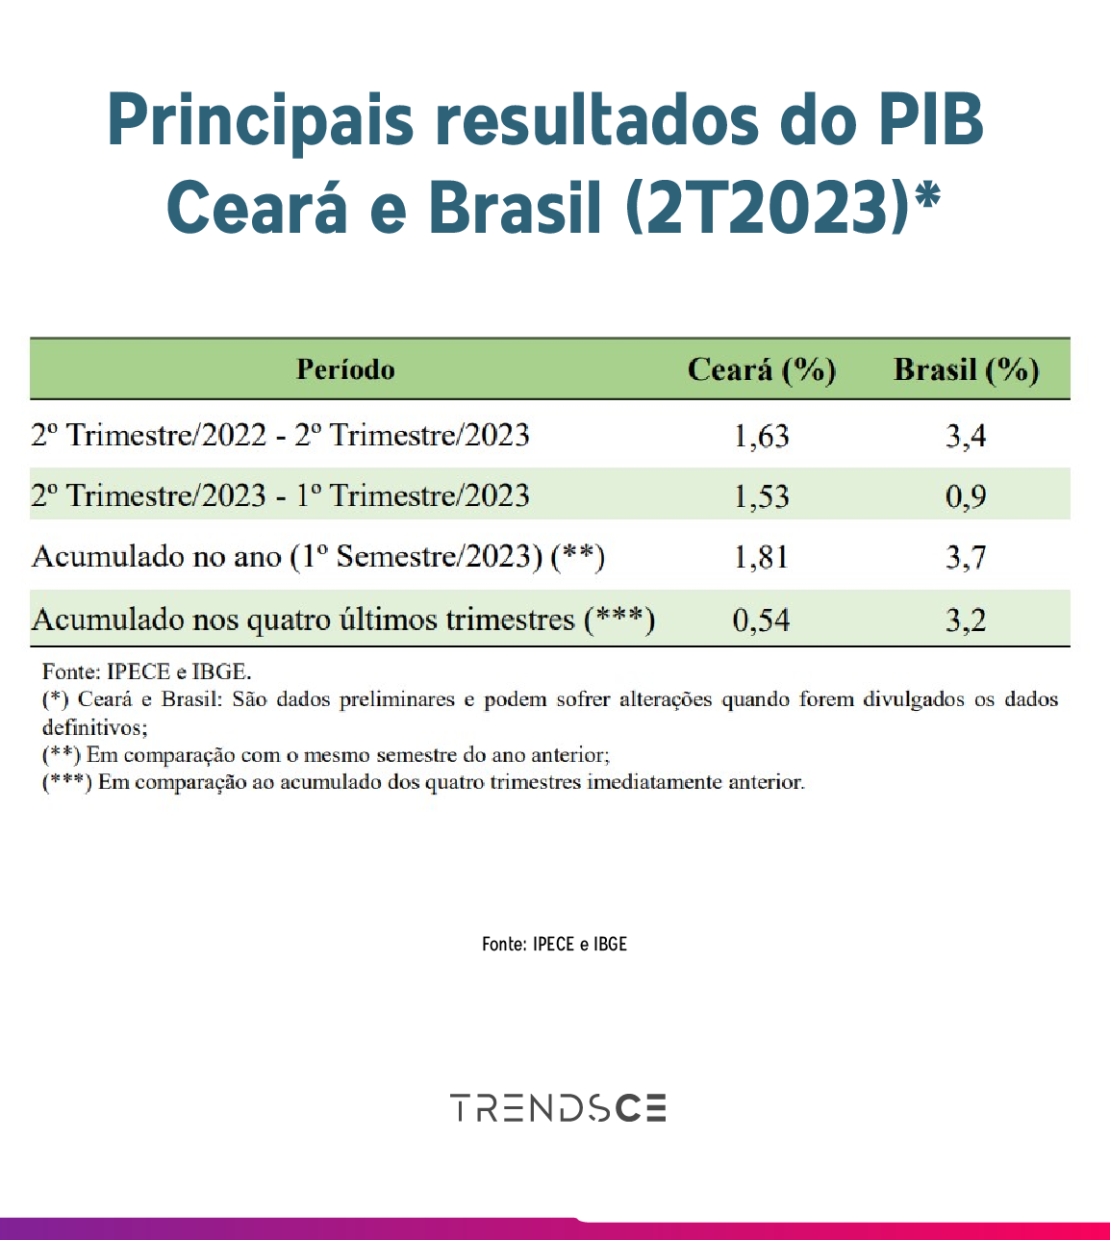 Principais resultados do PIB do Ceará e do Brasil